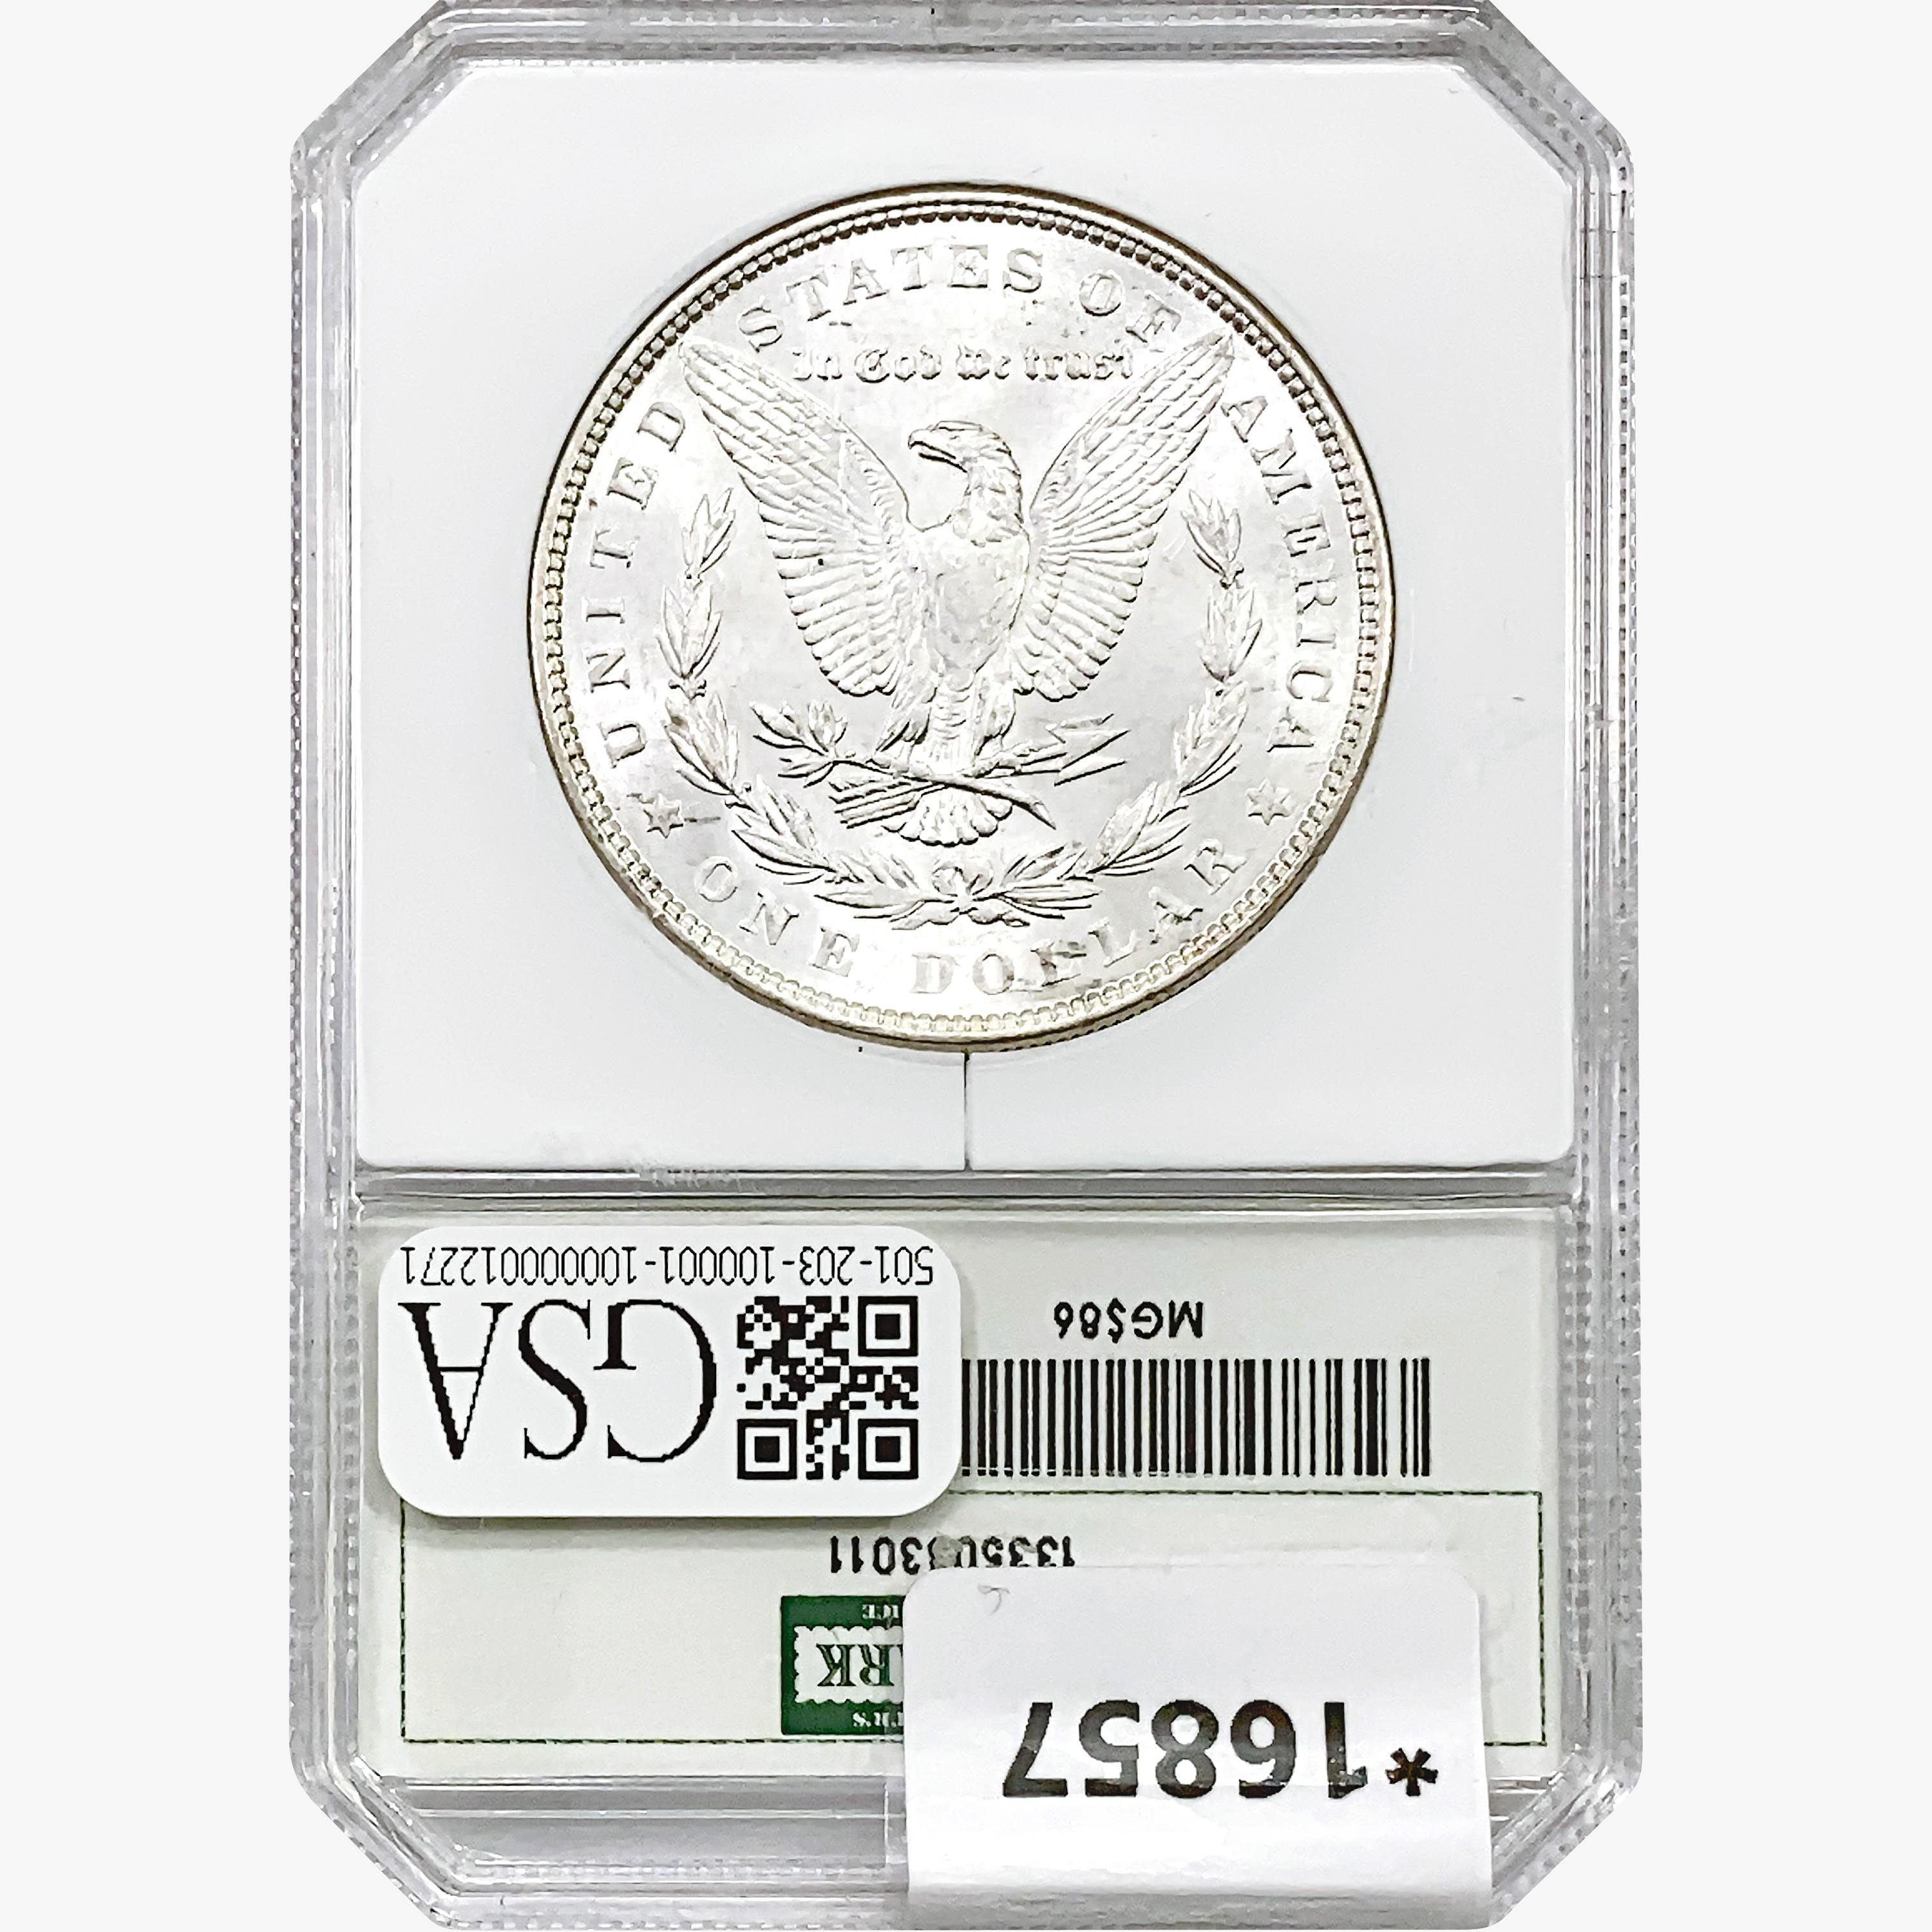 1886 Morgan Silver Dollar Hallmark MS62